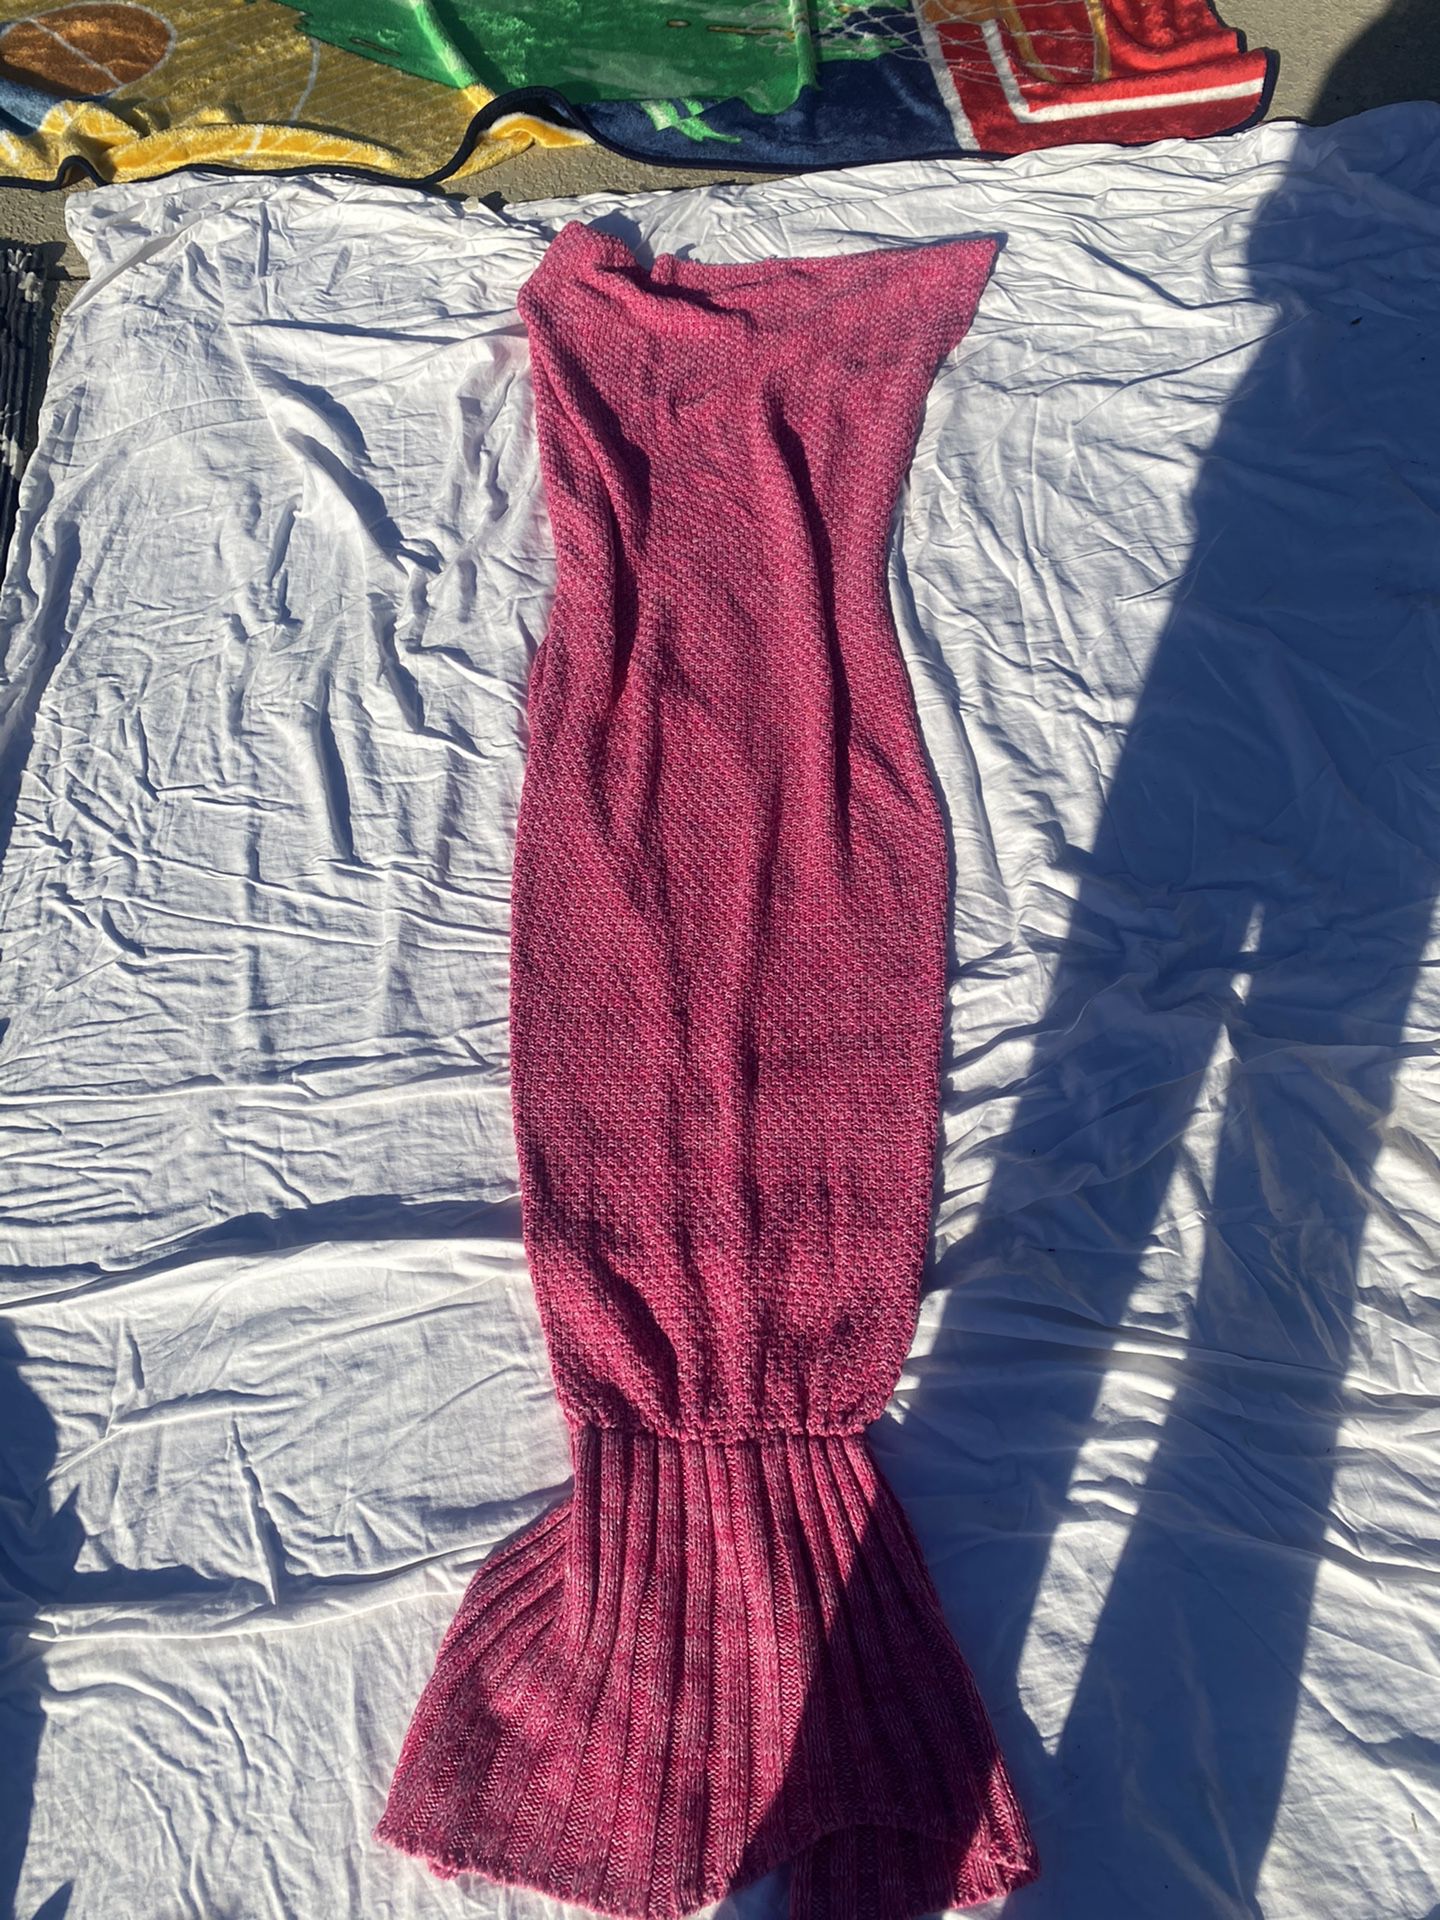 Pink Mermaid Blanket